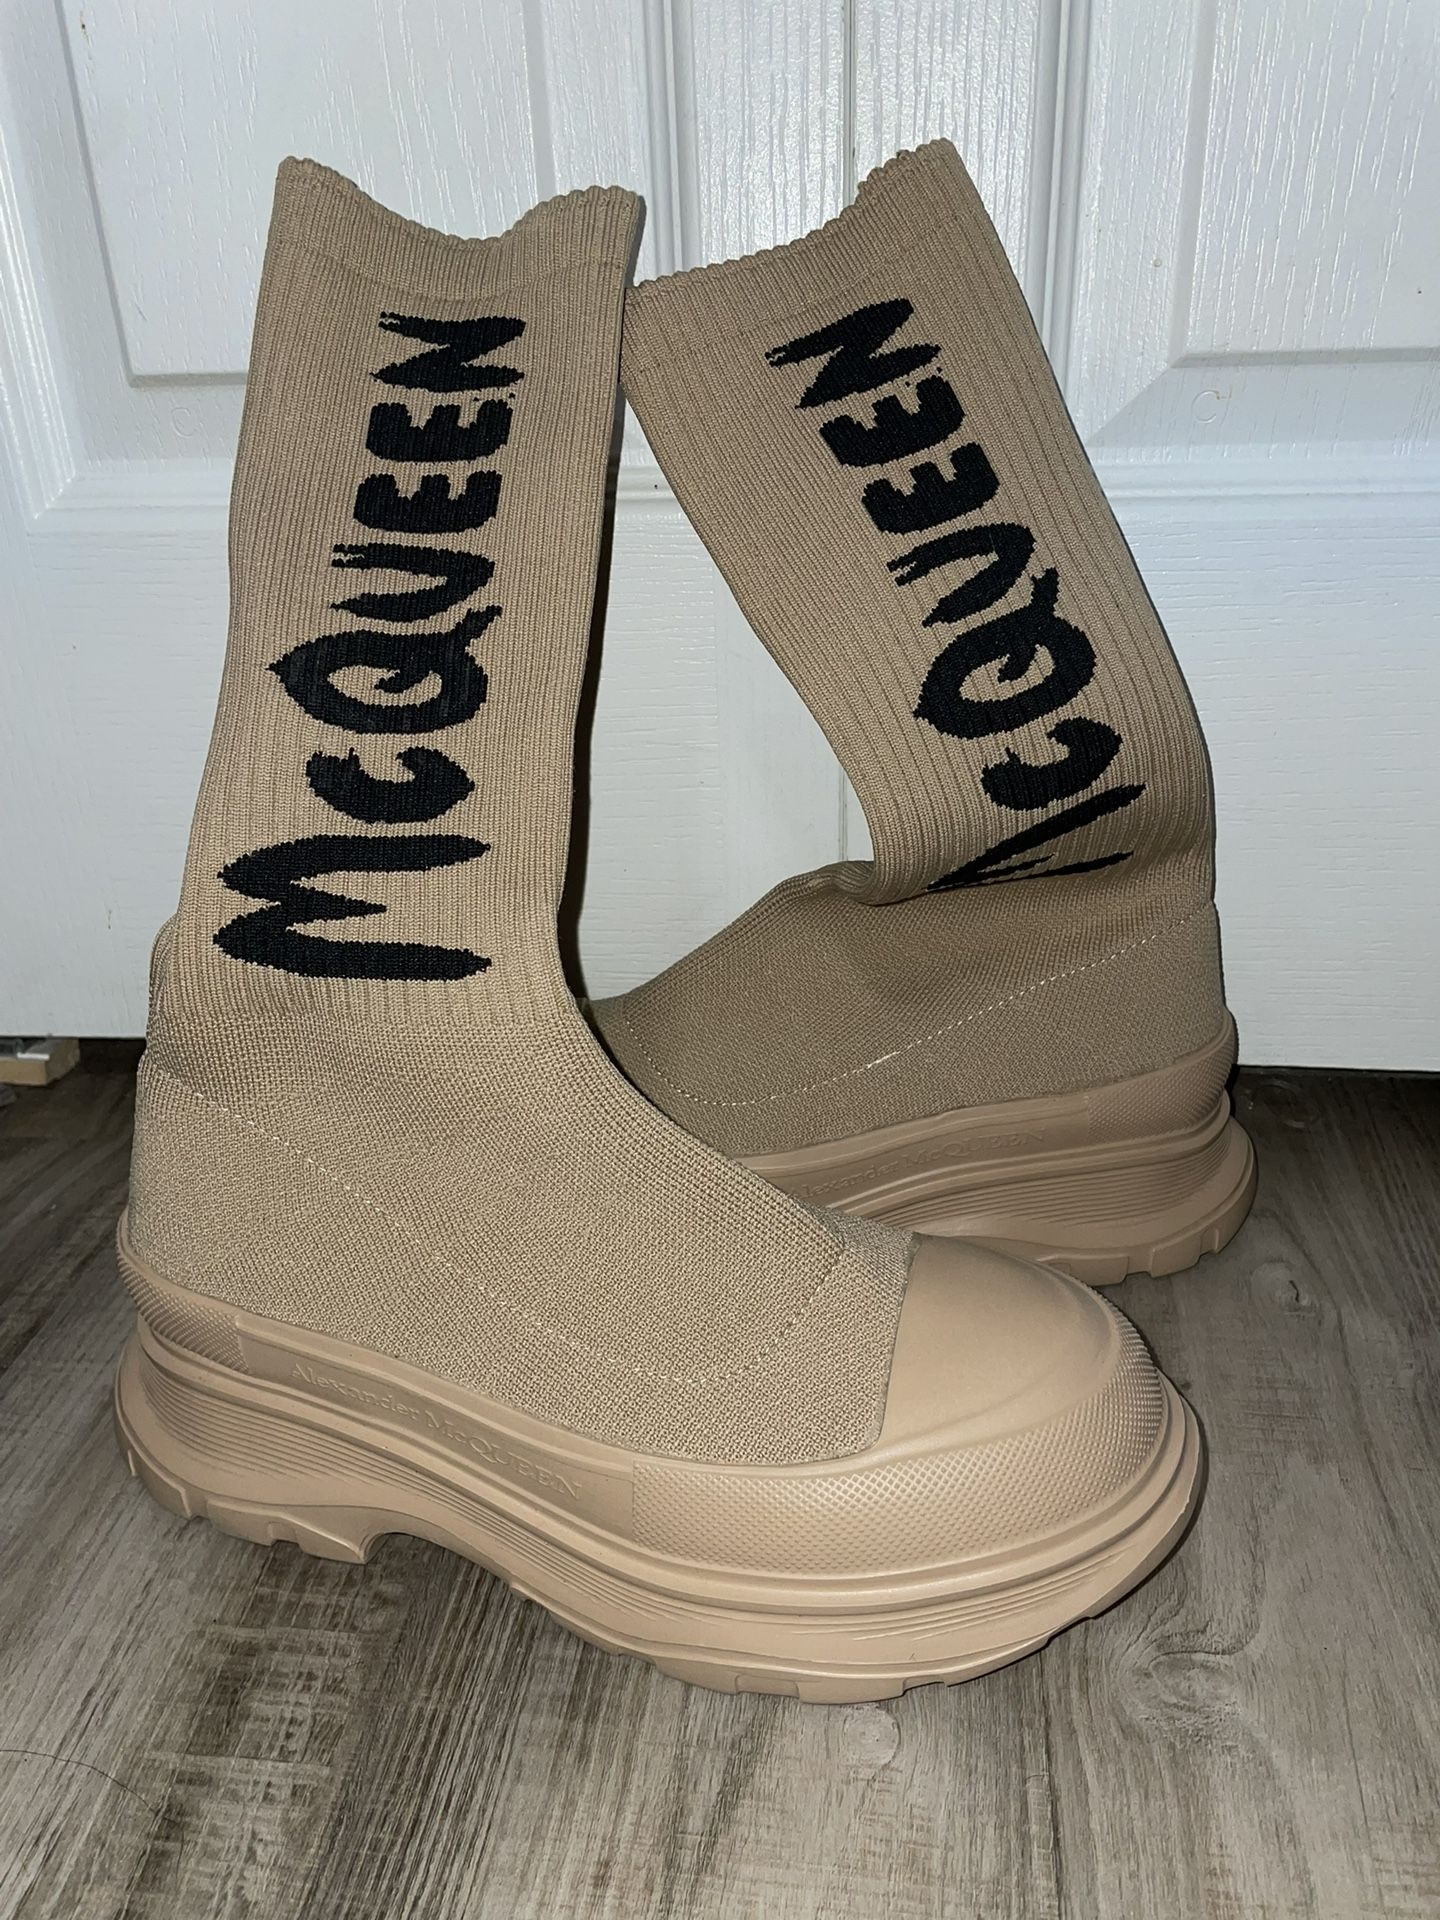 Womens Alexander McQueen boots 